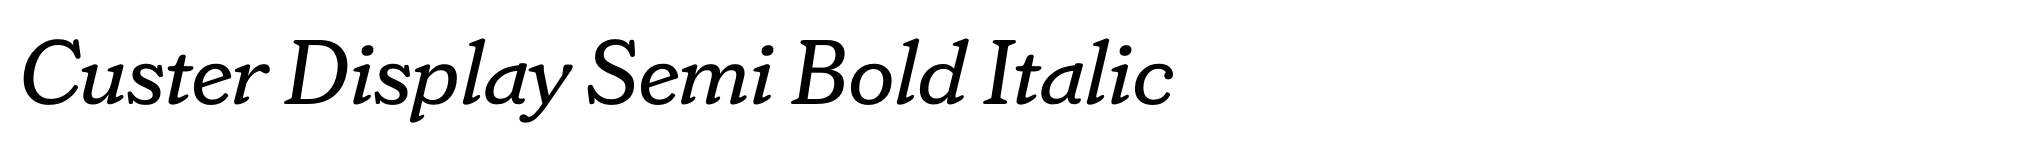 Custer Display Semi Bold Italic image